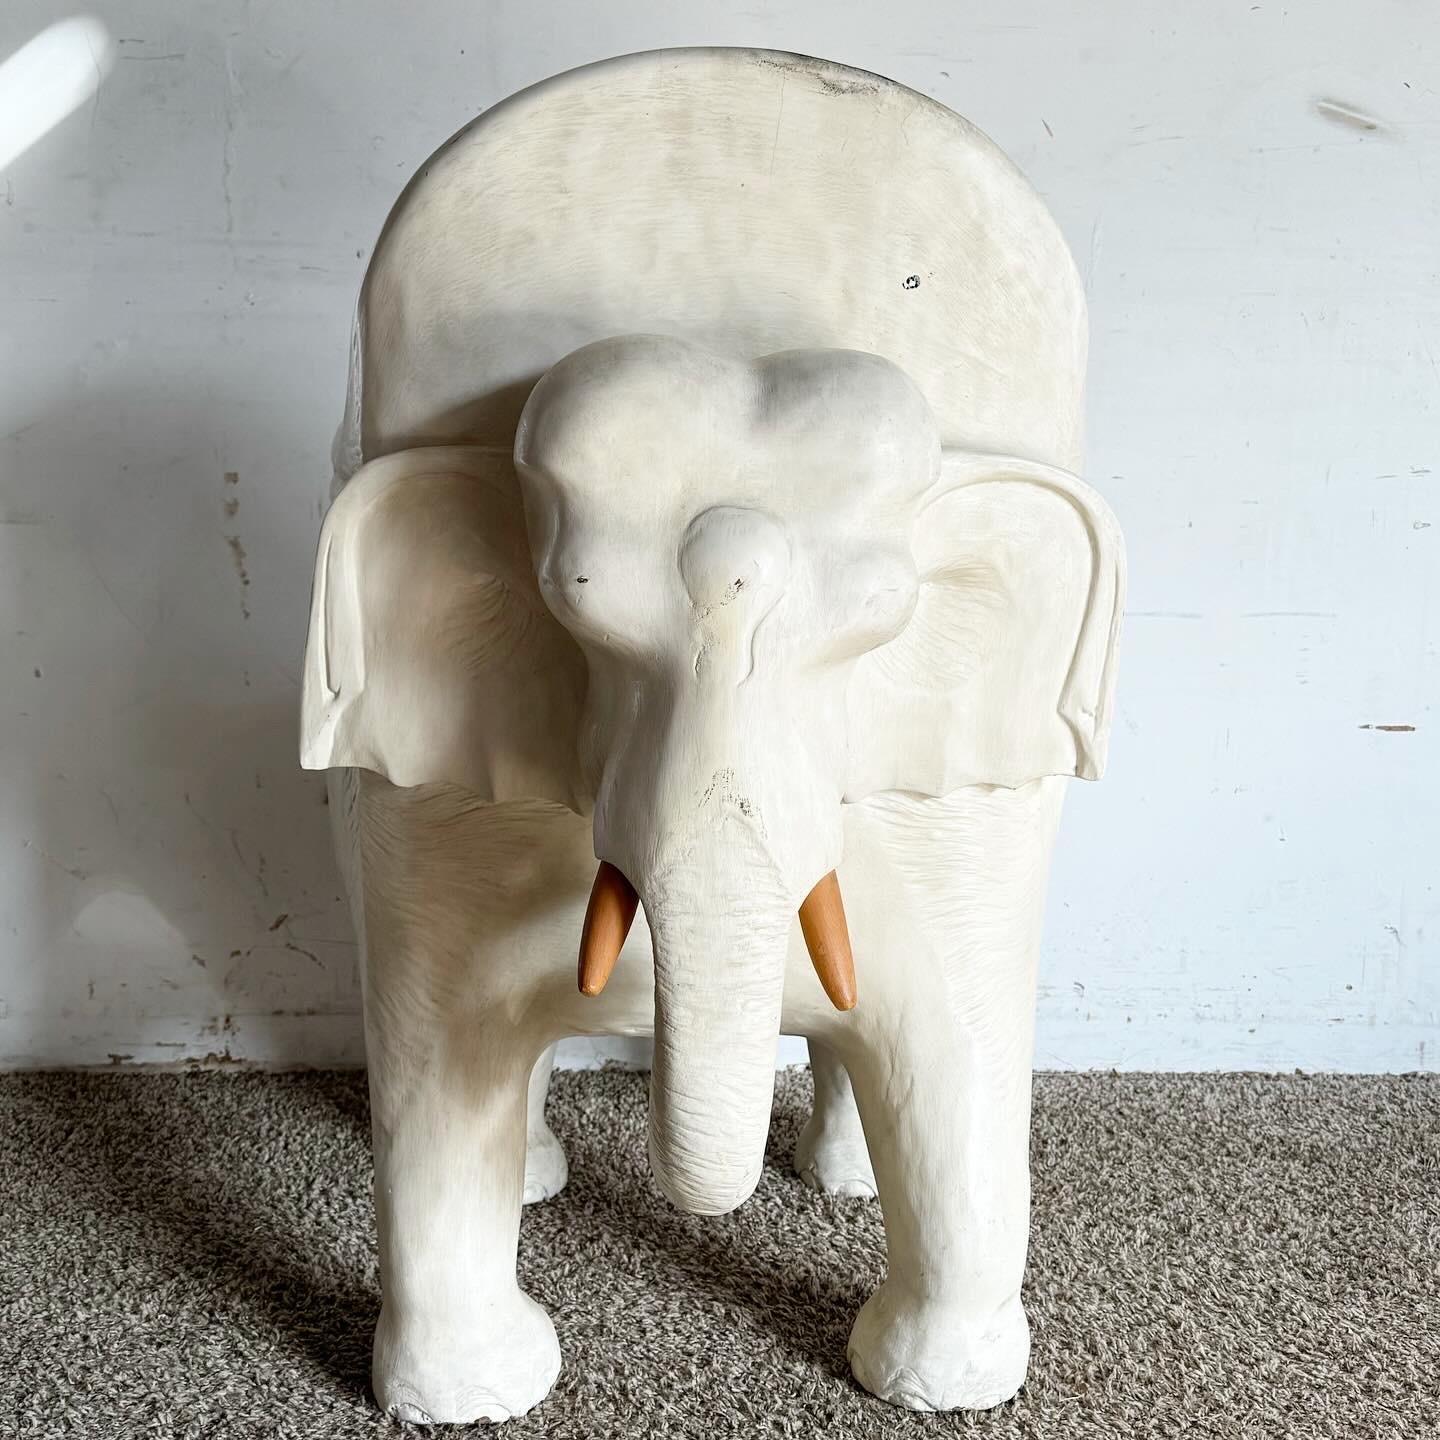 Apportez une touche de fantaisie et d'art à votre espace avec cette chaise d'appoint éléphant en bois sculpté à la main, peinte en blanc. Dotée de sculptures complexes, cette chaise témoigne d'un savoir-faire exceptionnel, avec une apparence moderne